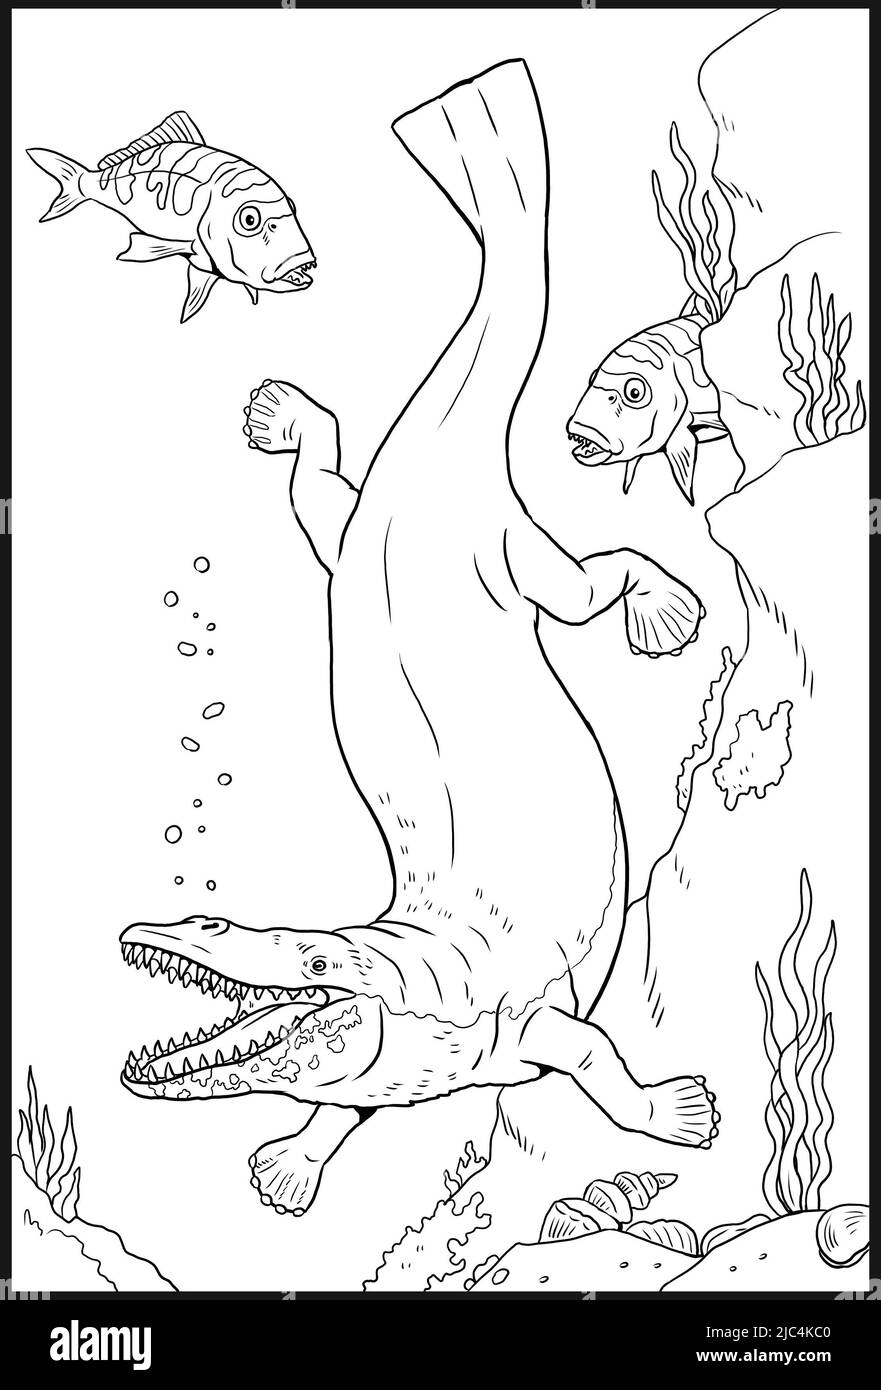 Genere estinto preistorico di balena antica - georgiacetus. Disegno con animali estinti. Disegno silhouette per libro da colorare. Foto Stock